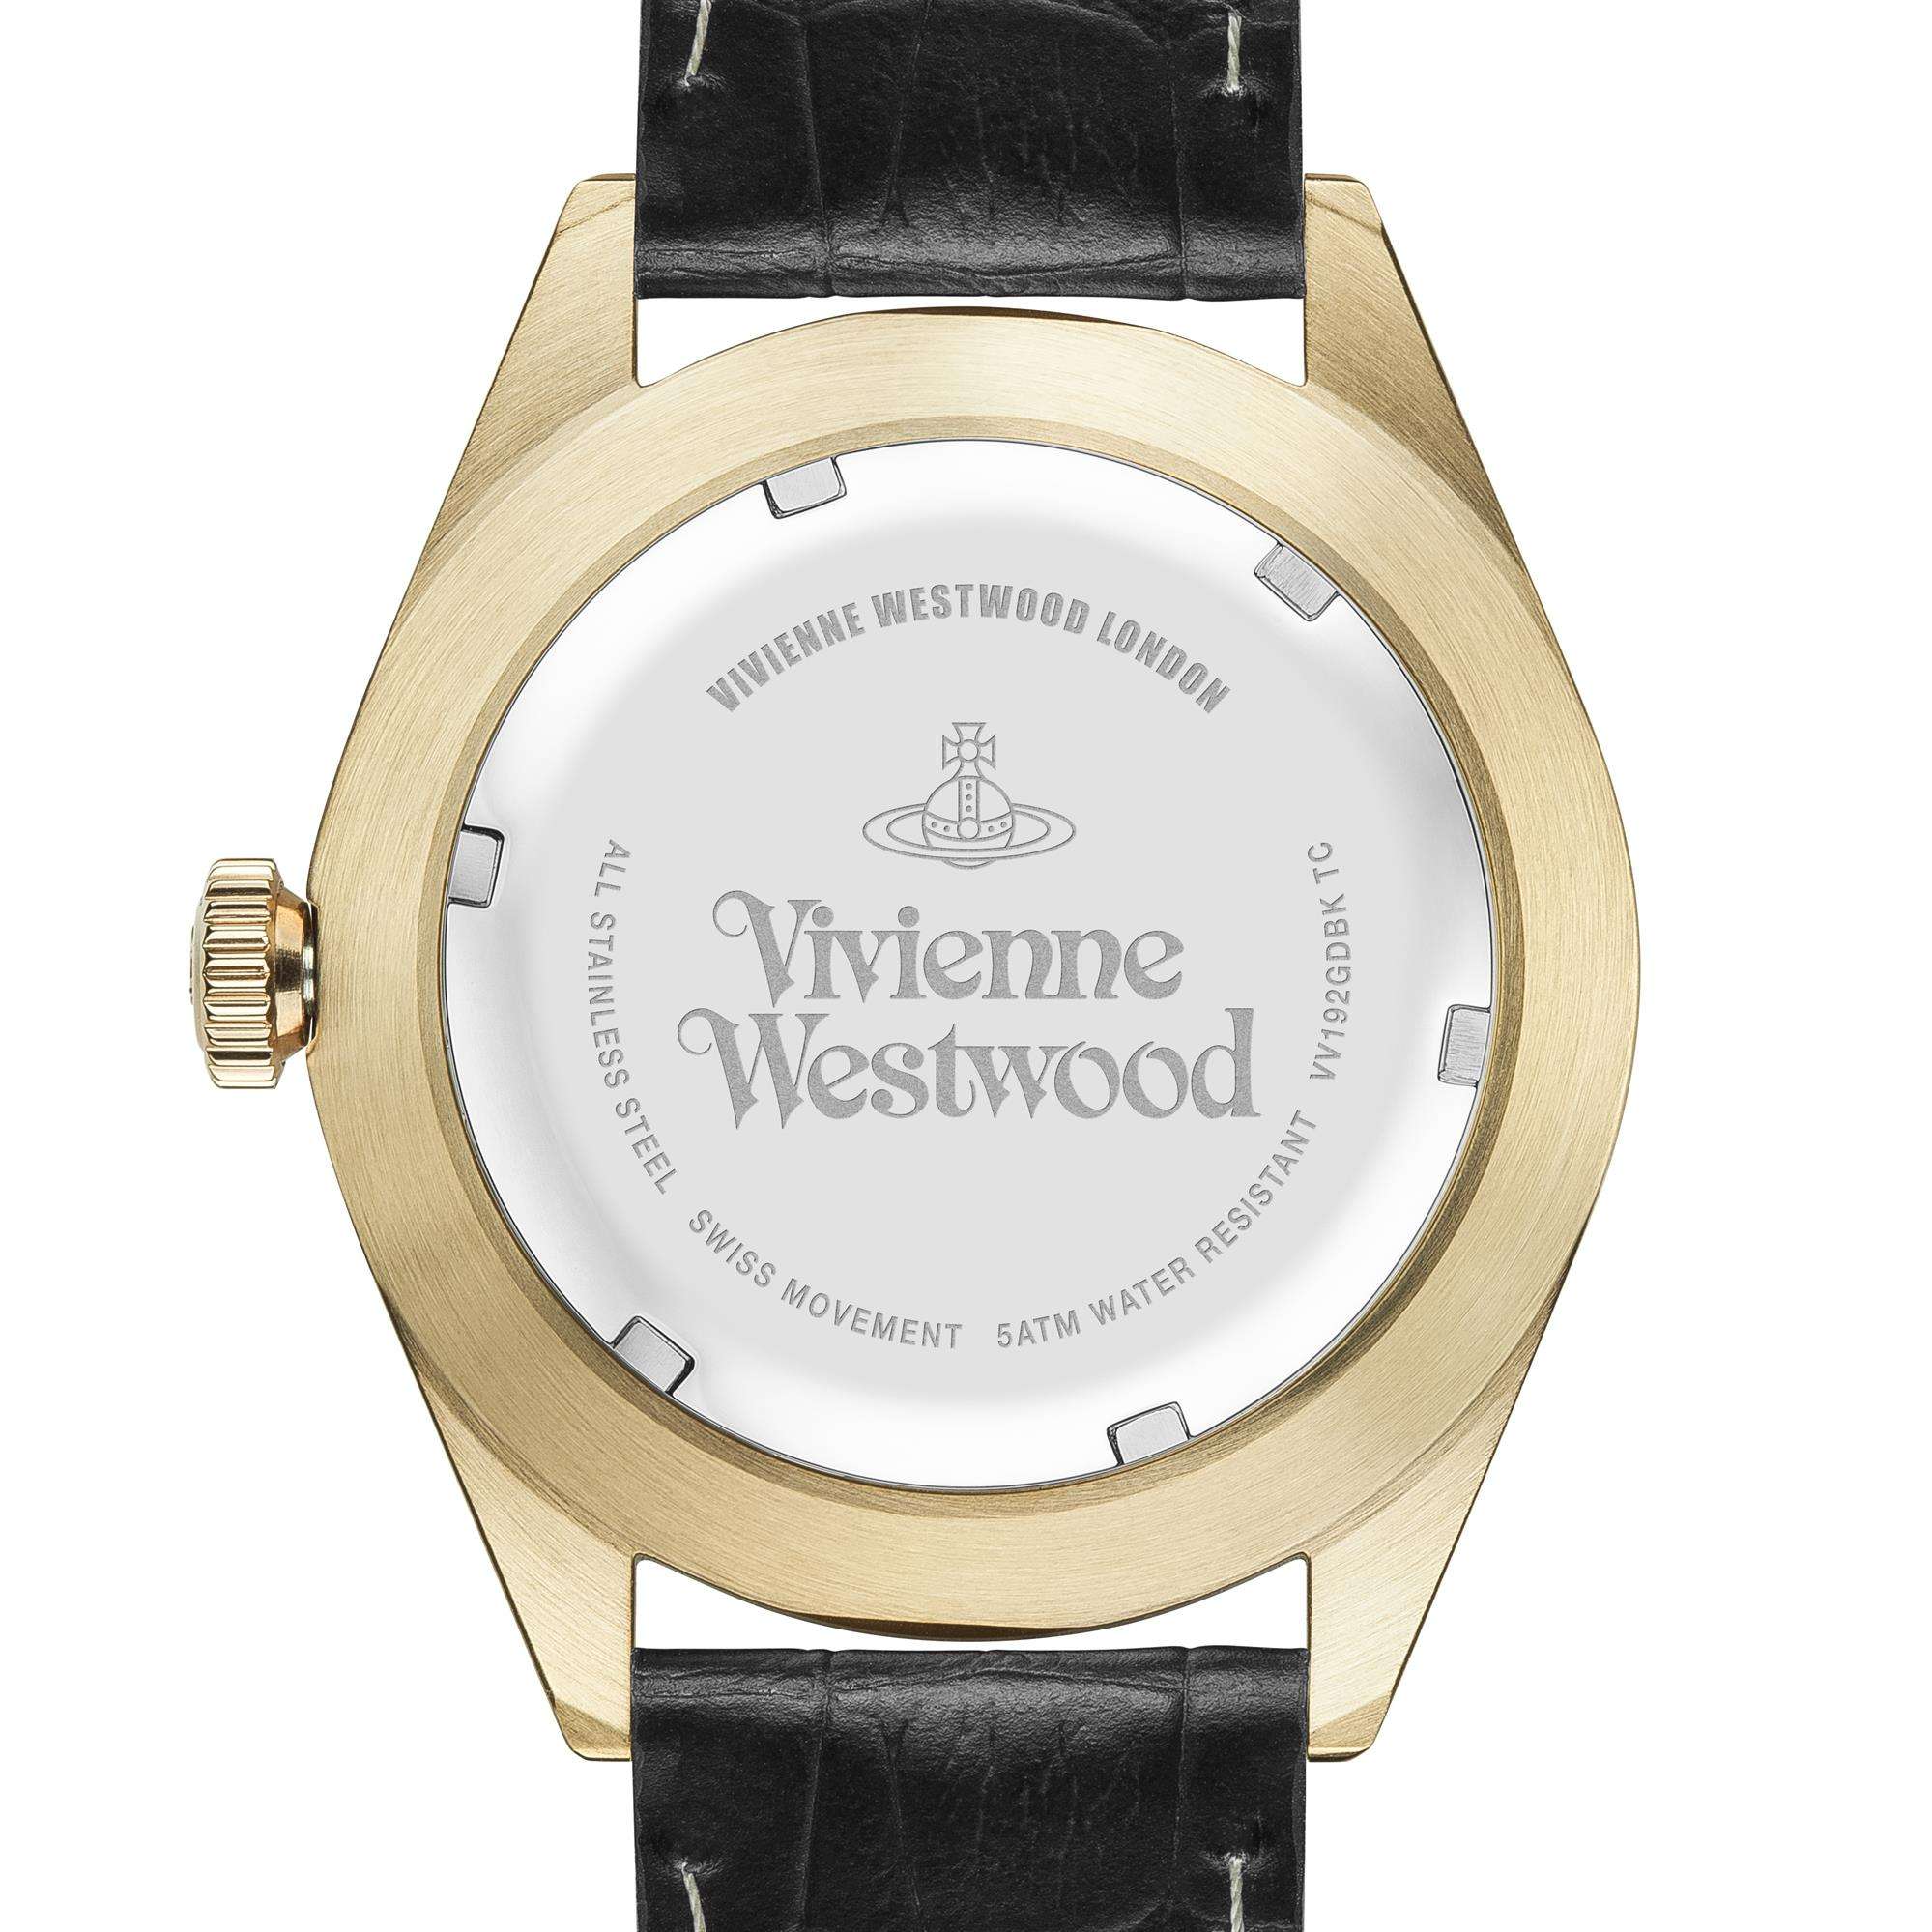 Vivienne westwood watch strap